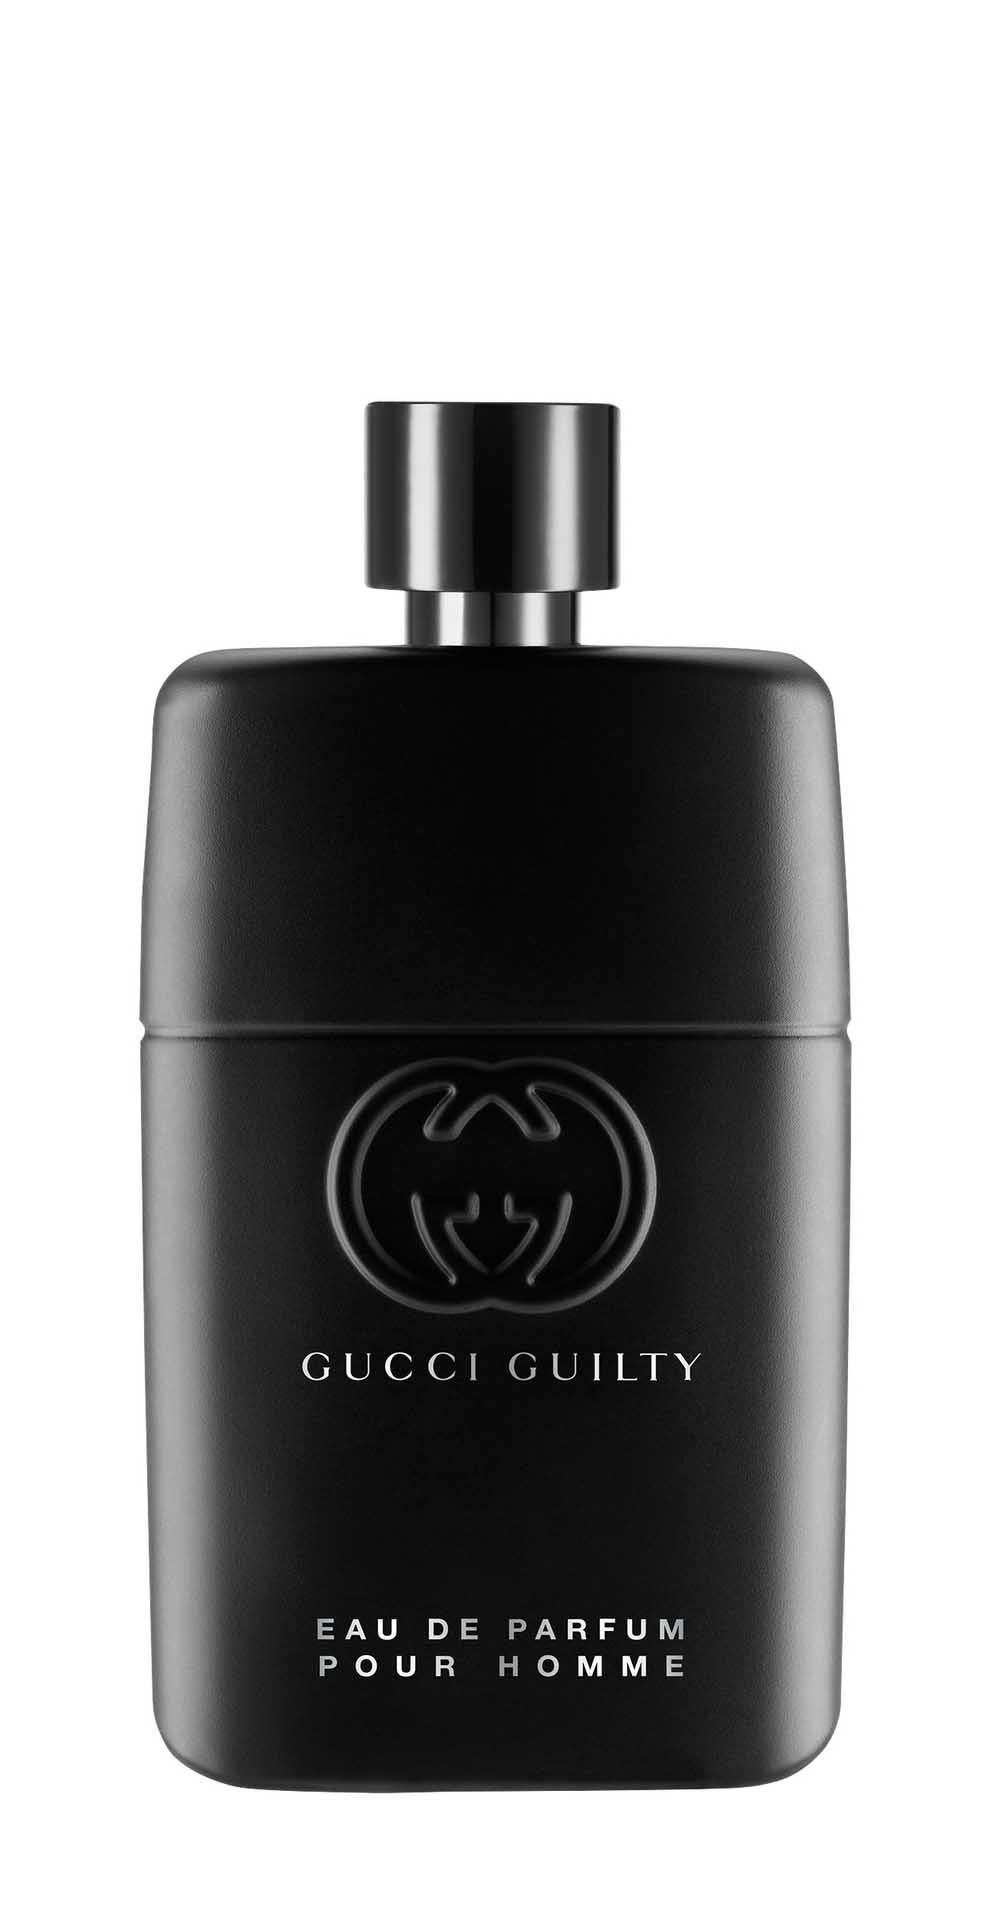 Парфюмерная вода Gucci Guilty Pour Homme Eau de Parfum для мужчин, 90 мл gucci eau de parfum 30